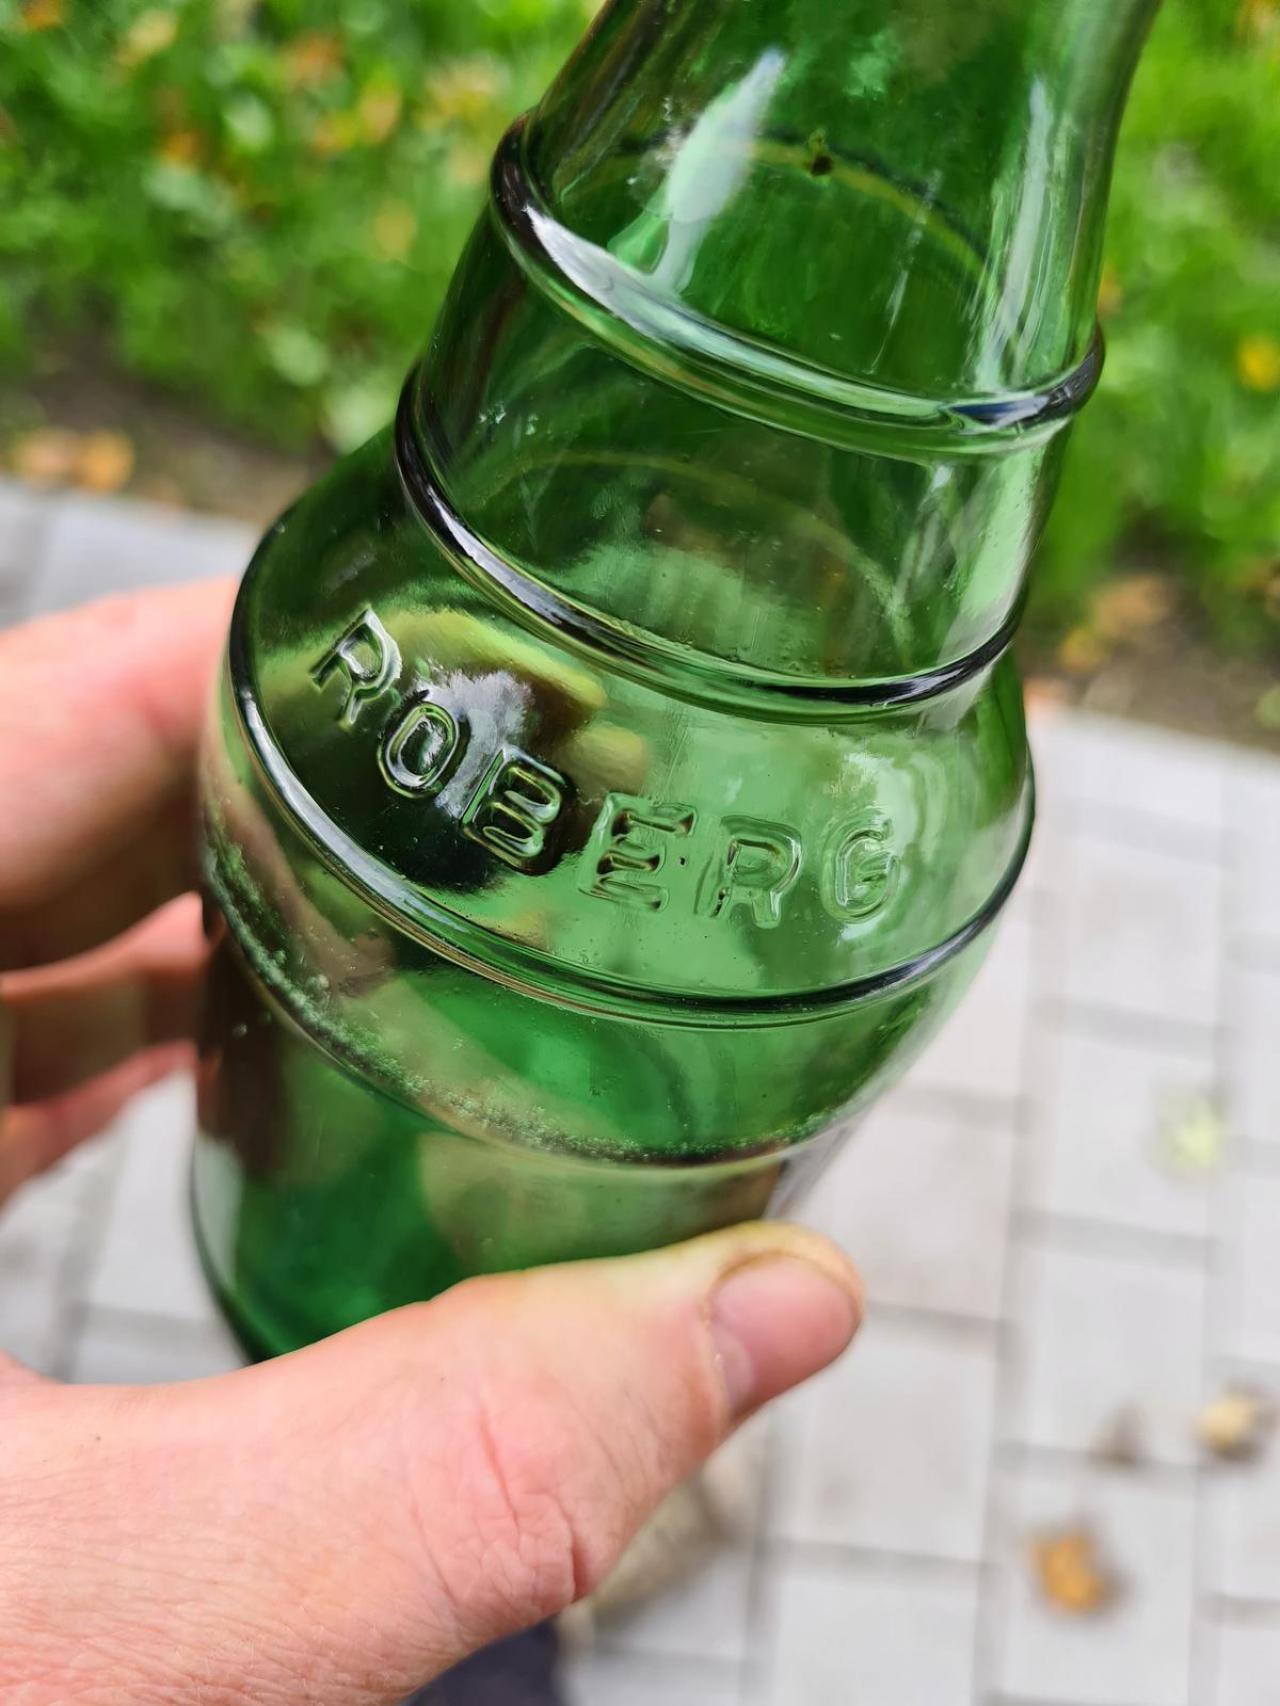 Oude fles van brouwerij Roberg, die stopte in 1976 gevonden tussen het zwerfvuil.